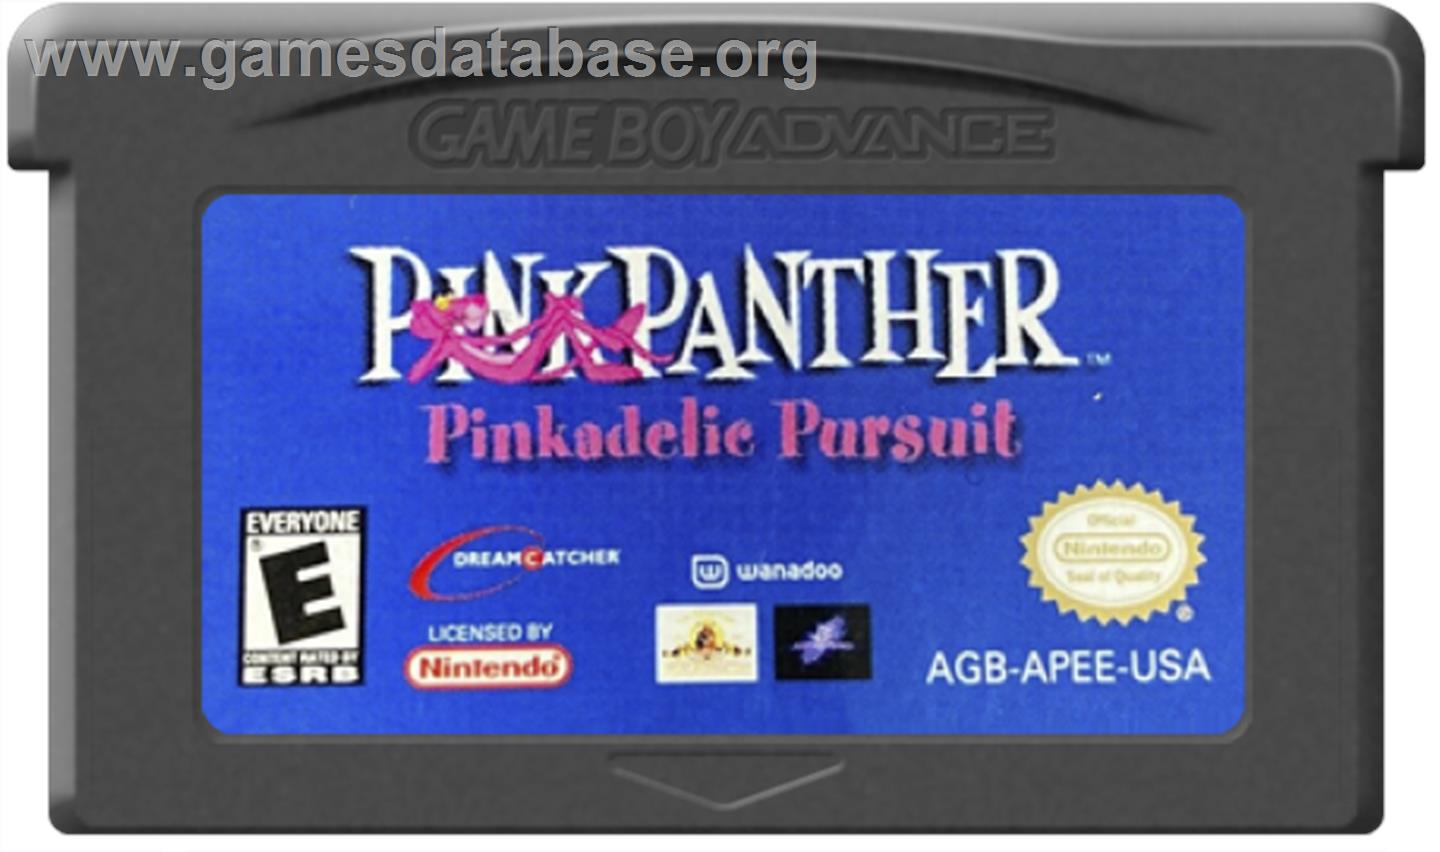 Pink Panther: Pinkadelic Pursuit - Nintendo Game Boy Advance - Artwork - Cartridge